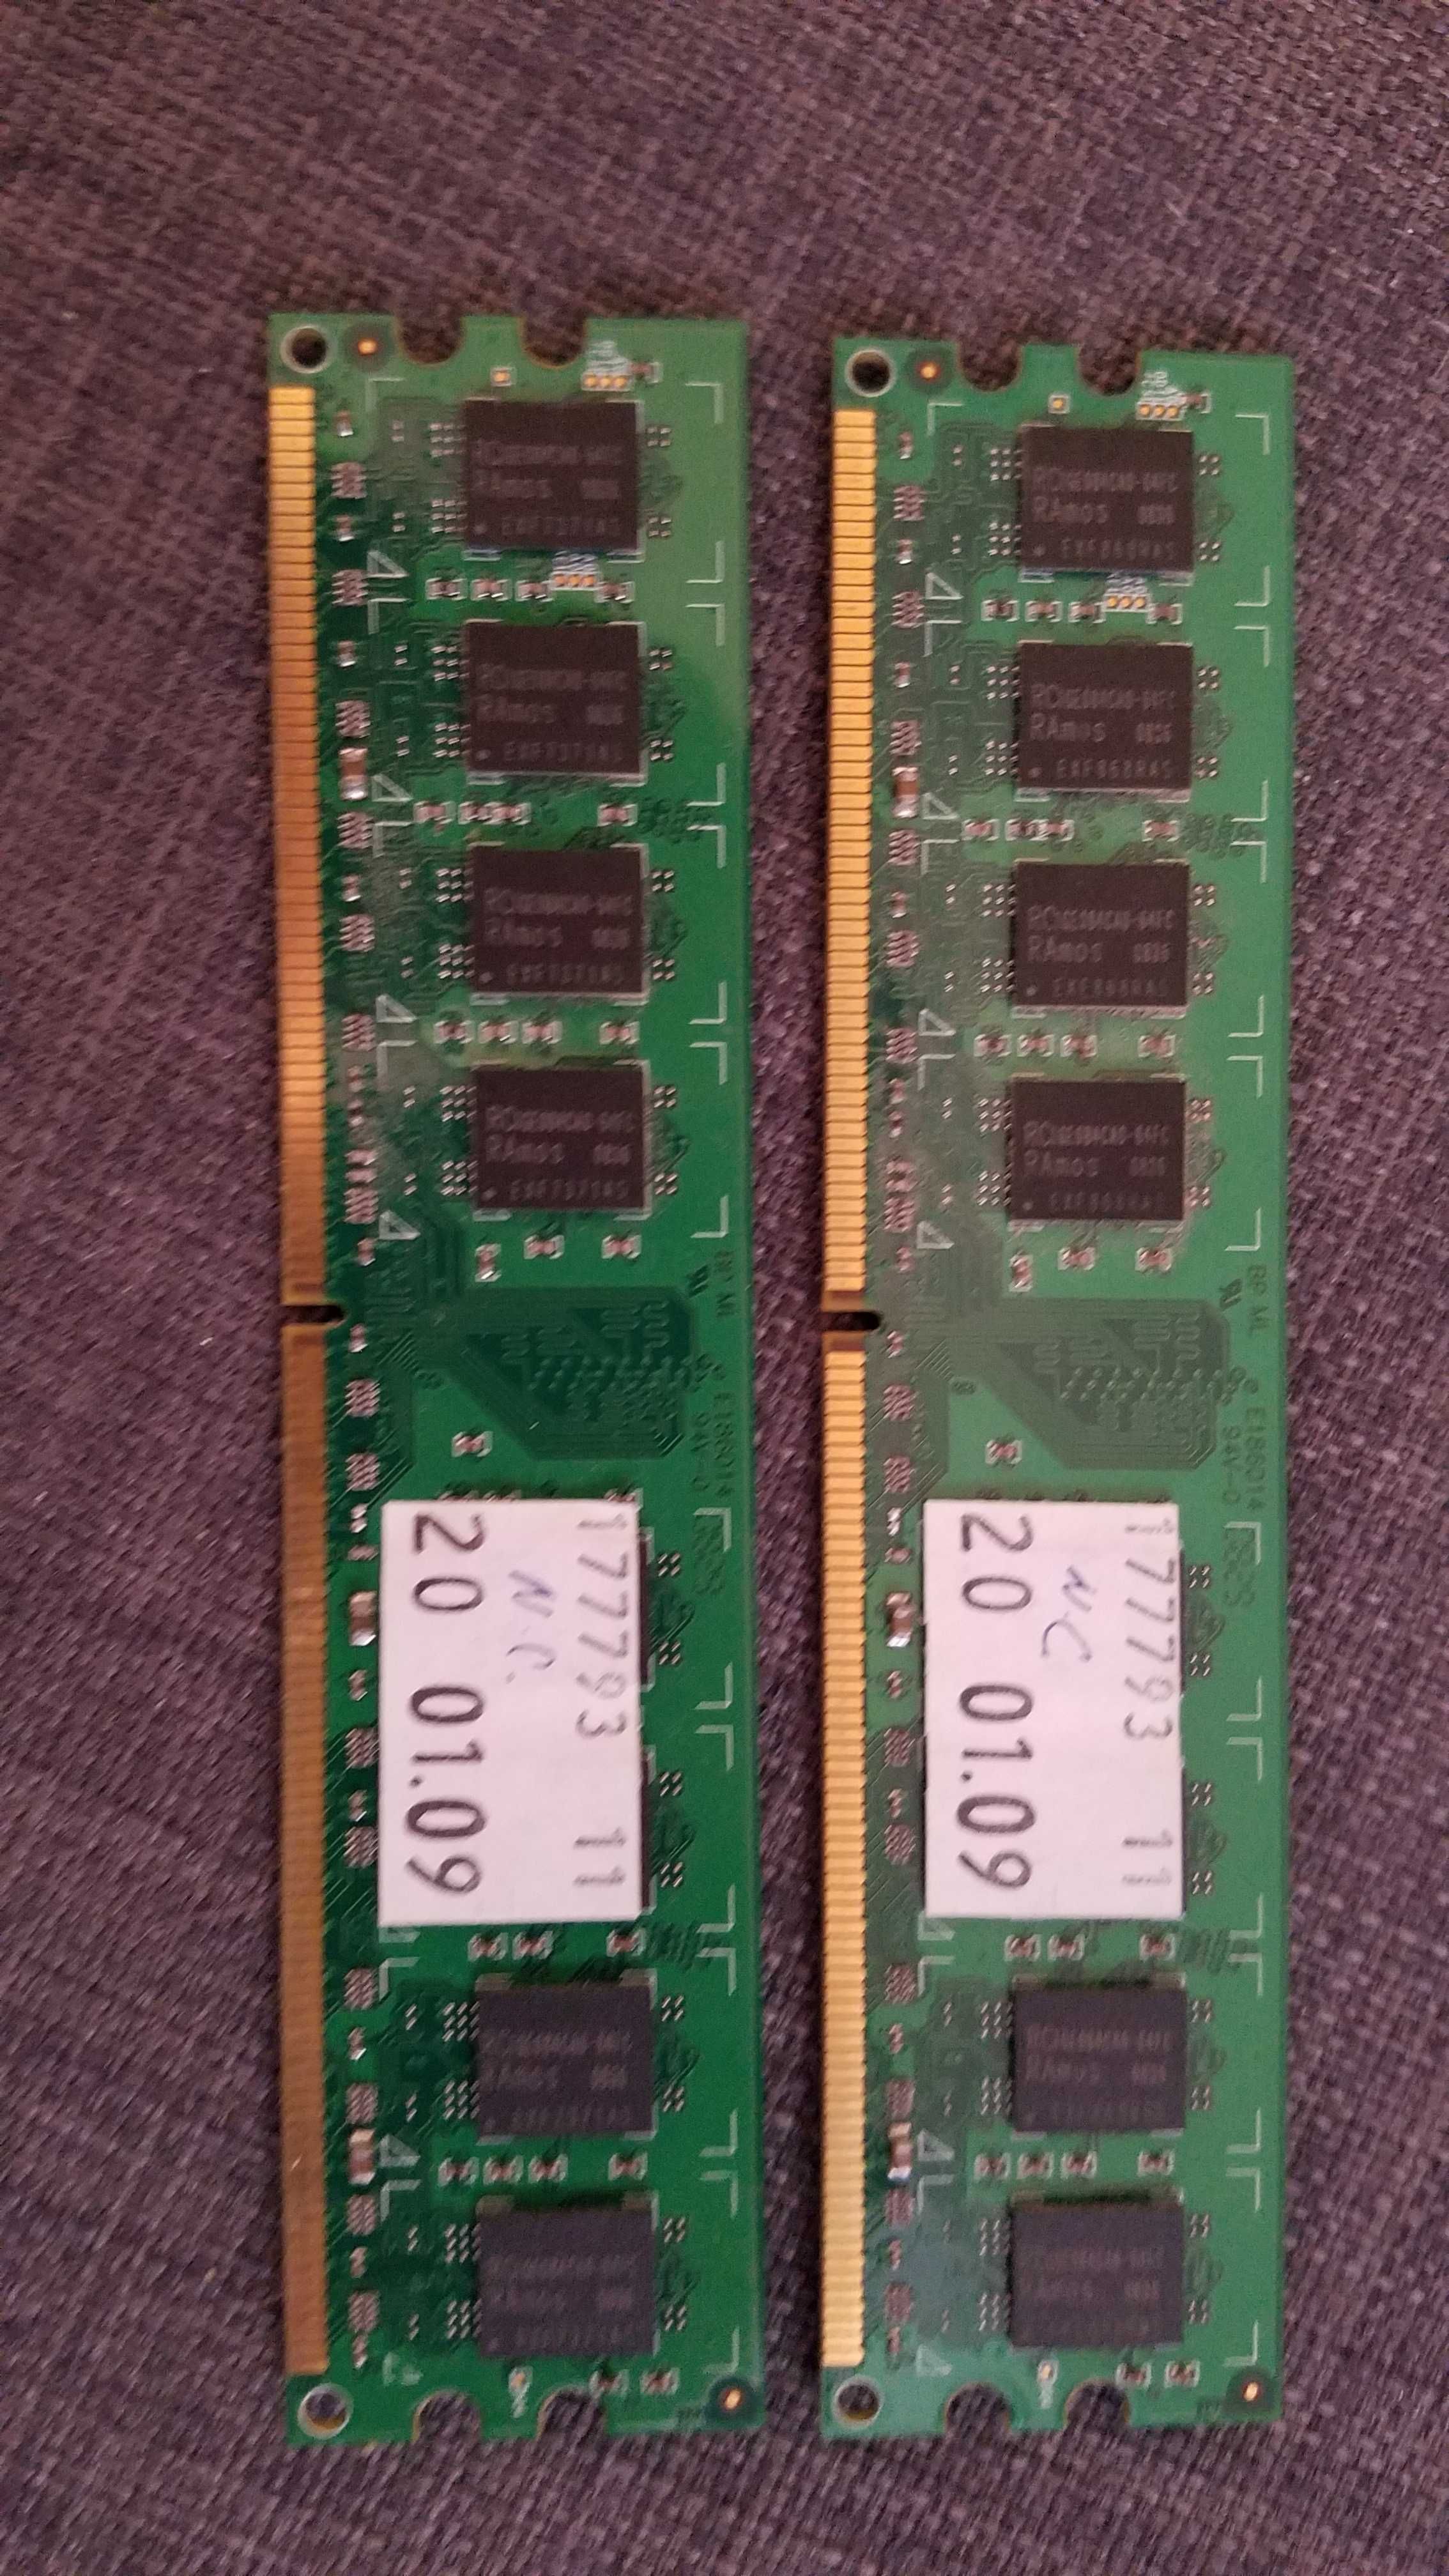 Memórias RAM PC2 5400 2GB